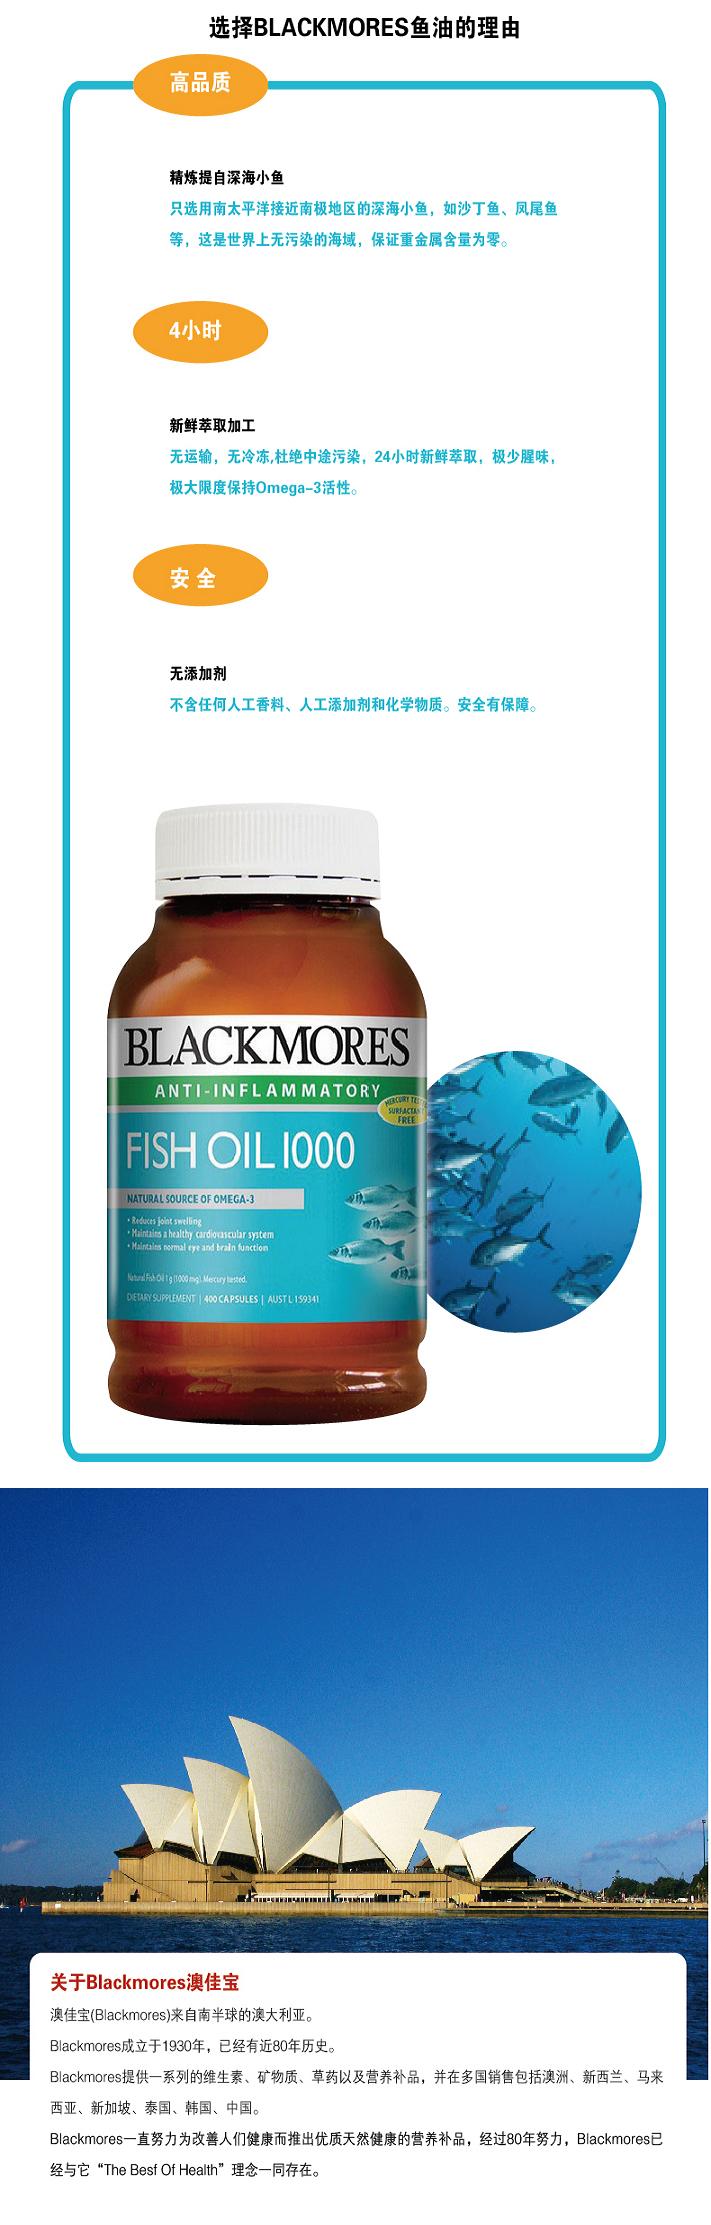 Blackmores Fish Oil 1000 深海鱼油 400粒 X 2